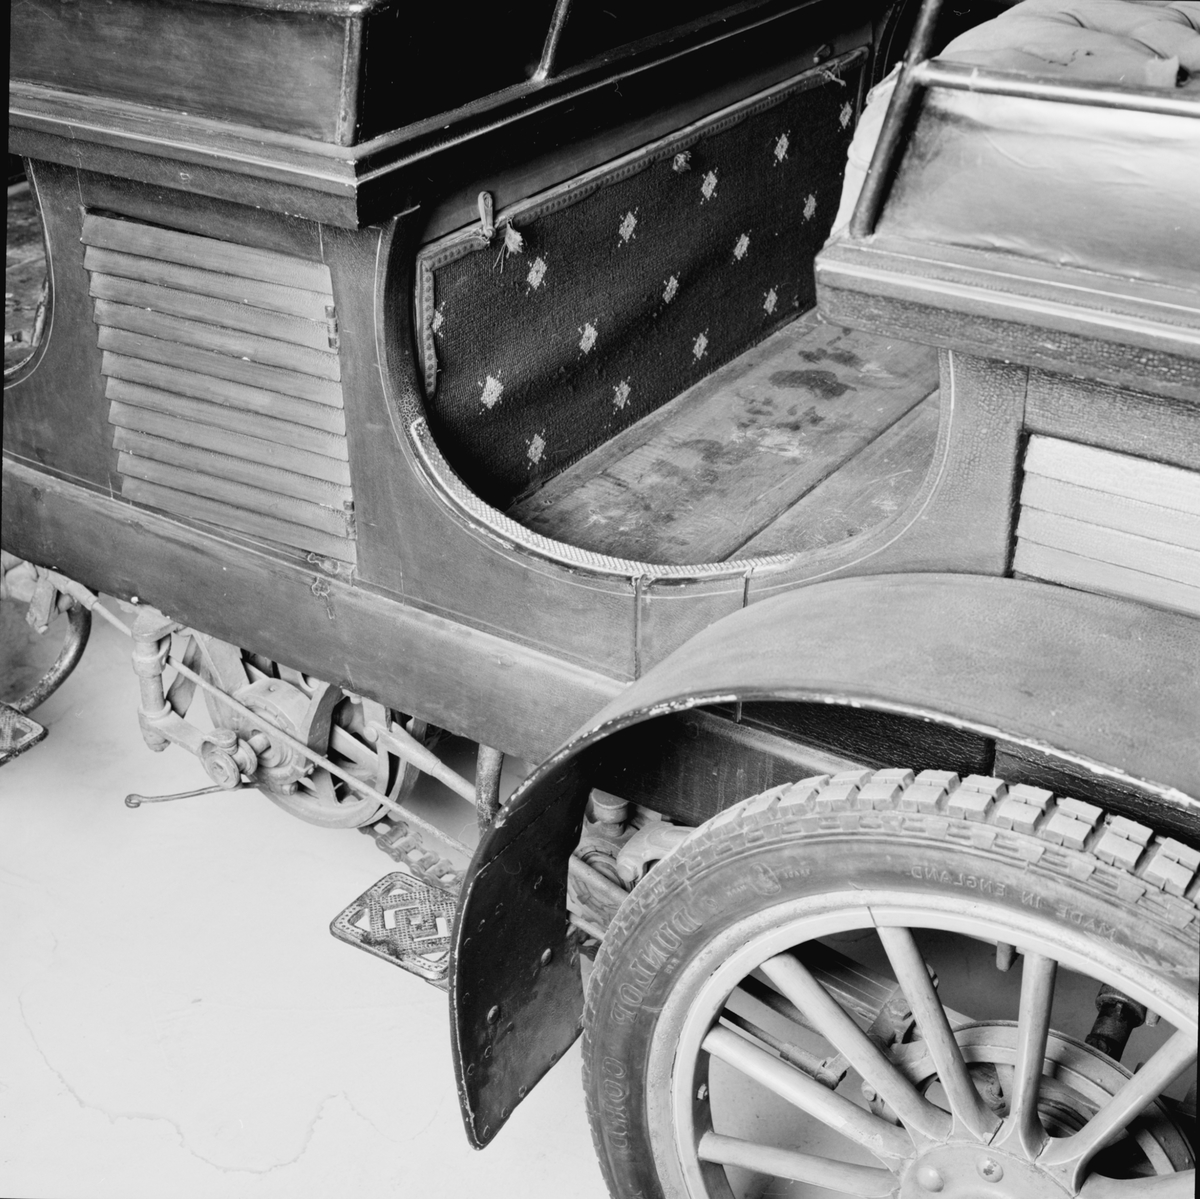 Scania 1902 för fyra personer. Motorn är tillverkad av Aster, Atéliers de Construction Mécanique l'Aster, Frankrike. Kedjedrivning till bakaxeln av de Diontyp. En Kemper motor med tvångsstyrd avlopps- och självstyrd inloppsventil. Karossen byggdes av G A Jönssons Vagnfabrik AB i Malmö och tyg till dynor och ryggstöd samt de ursprungliga lyktorna var inköpta hos firma Sally Mayjer i Köpenhamn.  Encylindrig vattenkyld fyrtaktsmotor. Planväxellåda med två växlar framåt samt backväxel.
Hastighetsutväxlingar 2, kraftöverföringen vid de olika växlarna sker medelst kedjor samt till bakaxeln med en enkel kedja i mitten av vagnen. Bakaxel differentialen är upphängd i vagnen och sker kraftöverföringen till bakhjulen medelst kardanaxlar med dubbla knutar.